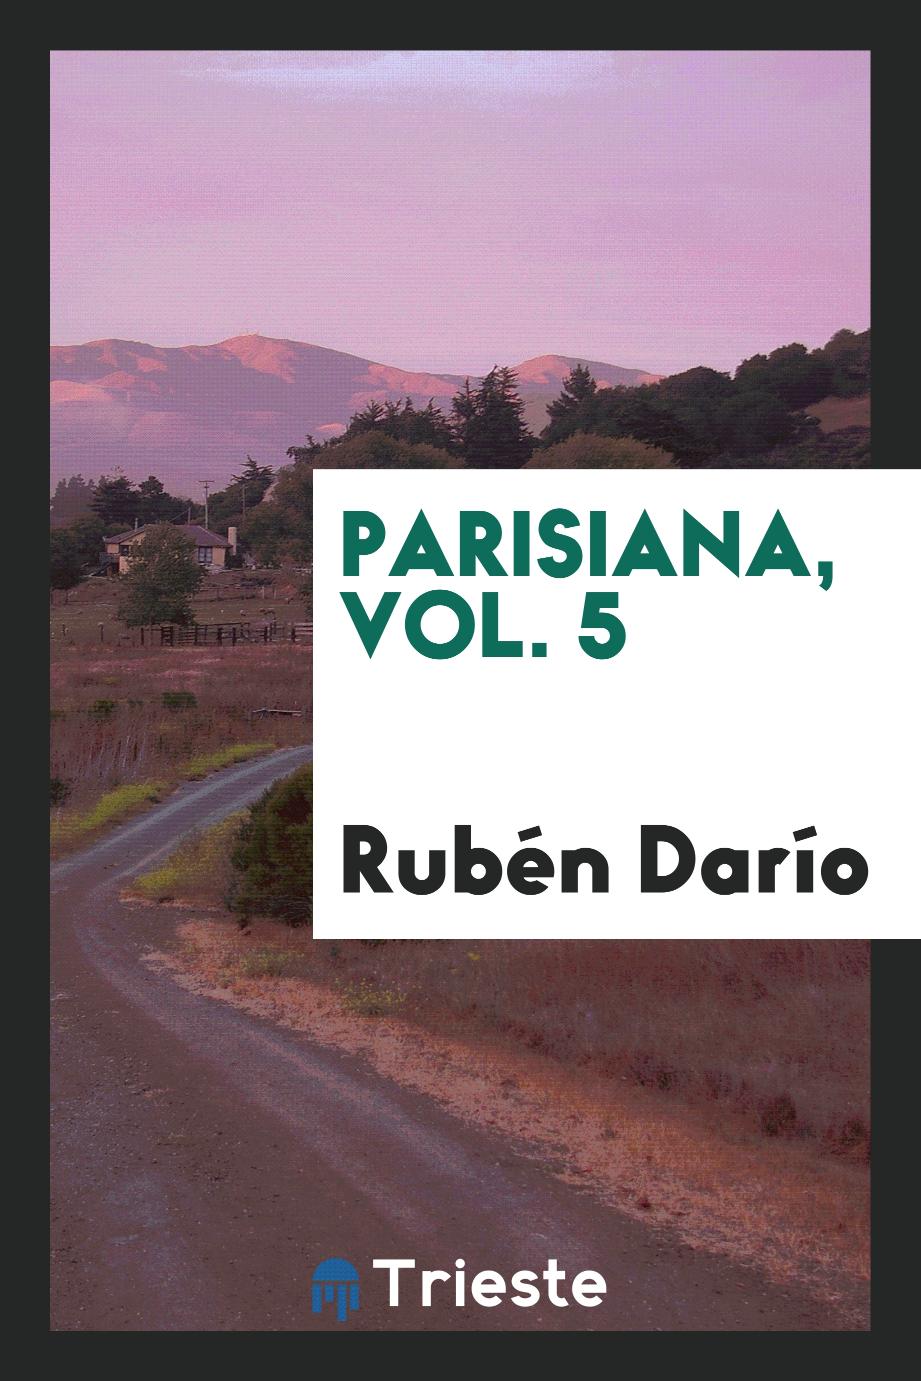 Rubén Darío - Parisiana, Vol. 5